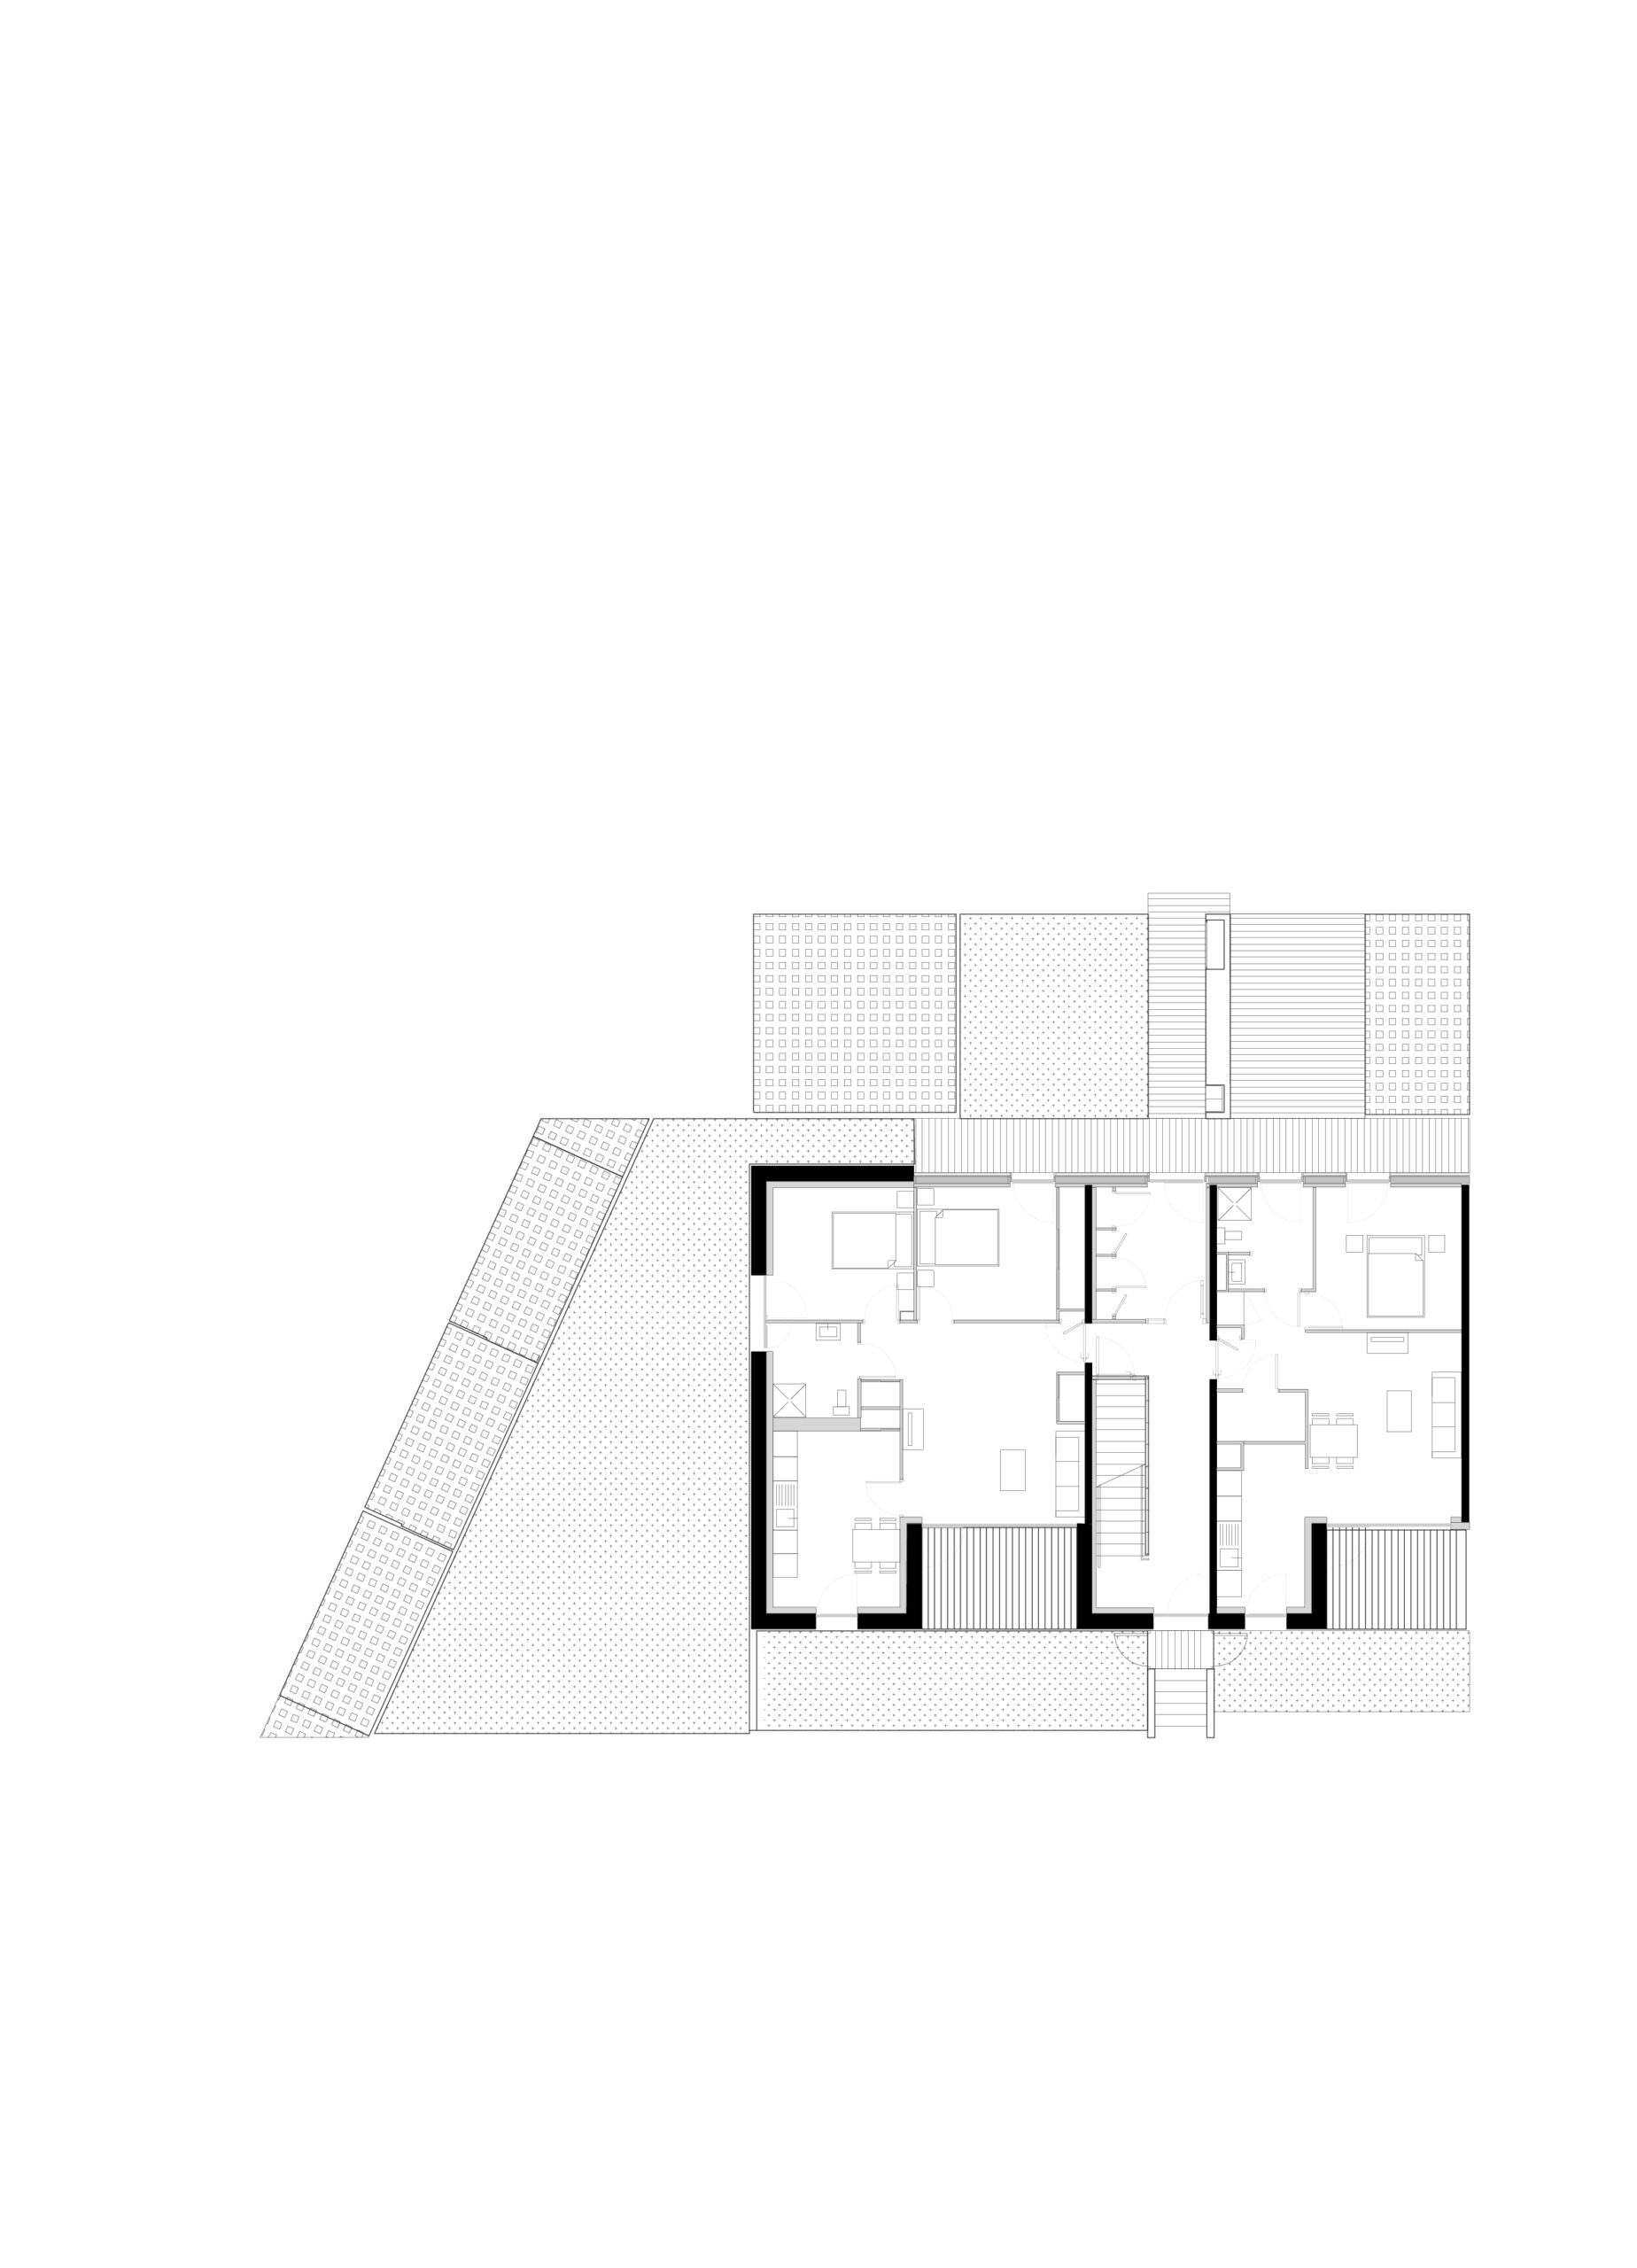 Plan d'un logement du bâtiment C / Atelier du Rouget Simon Teyssou & associés